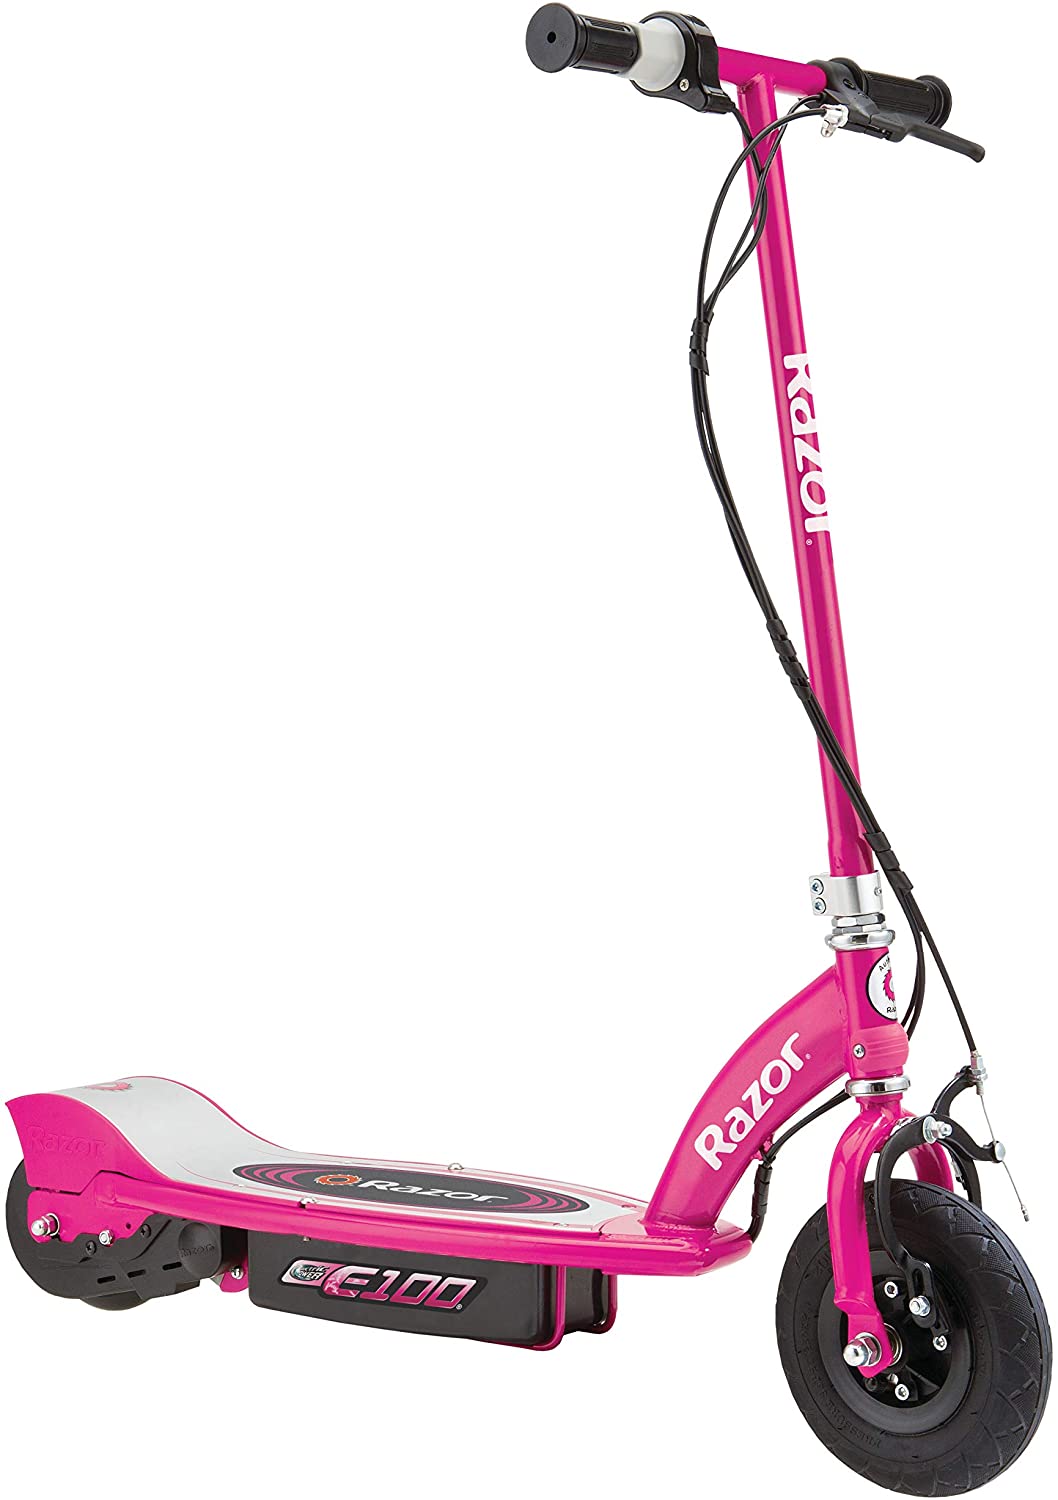  Skin compatible con el scooter eléctrico Razor E Prime - Rosa  sólido  MightySkins - Funda protectora de vinilo duradera y única, fácil  de aplicar, quitar y cambiar de estilo, fabricada